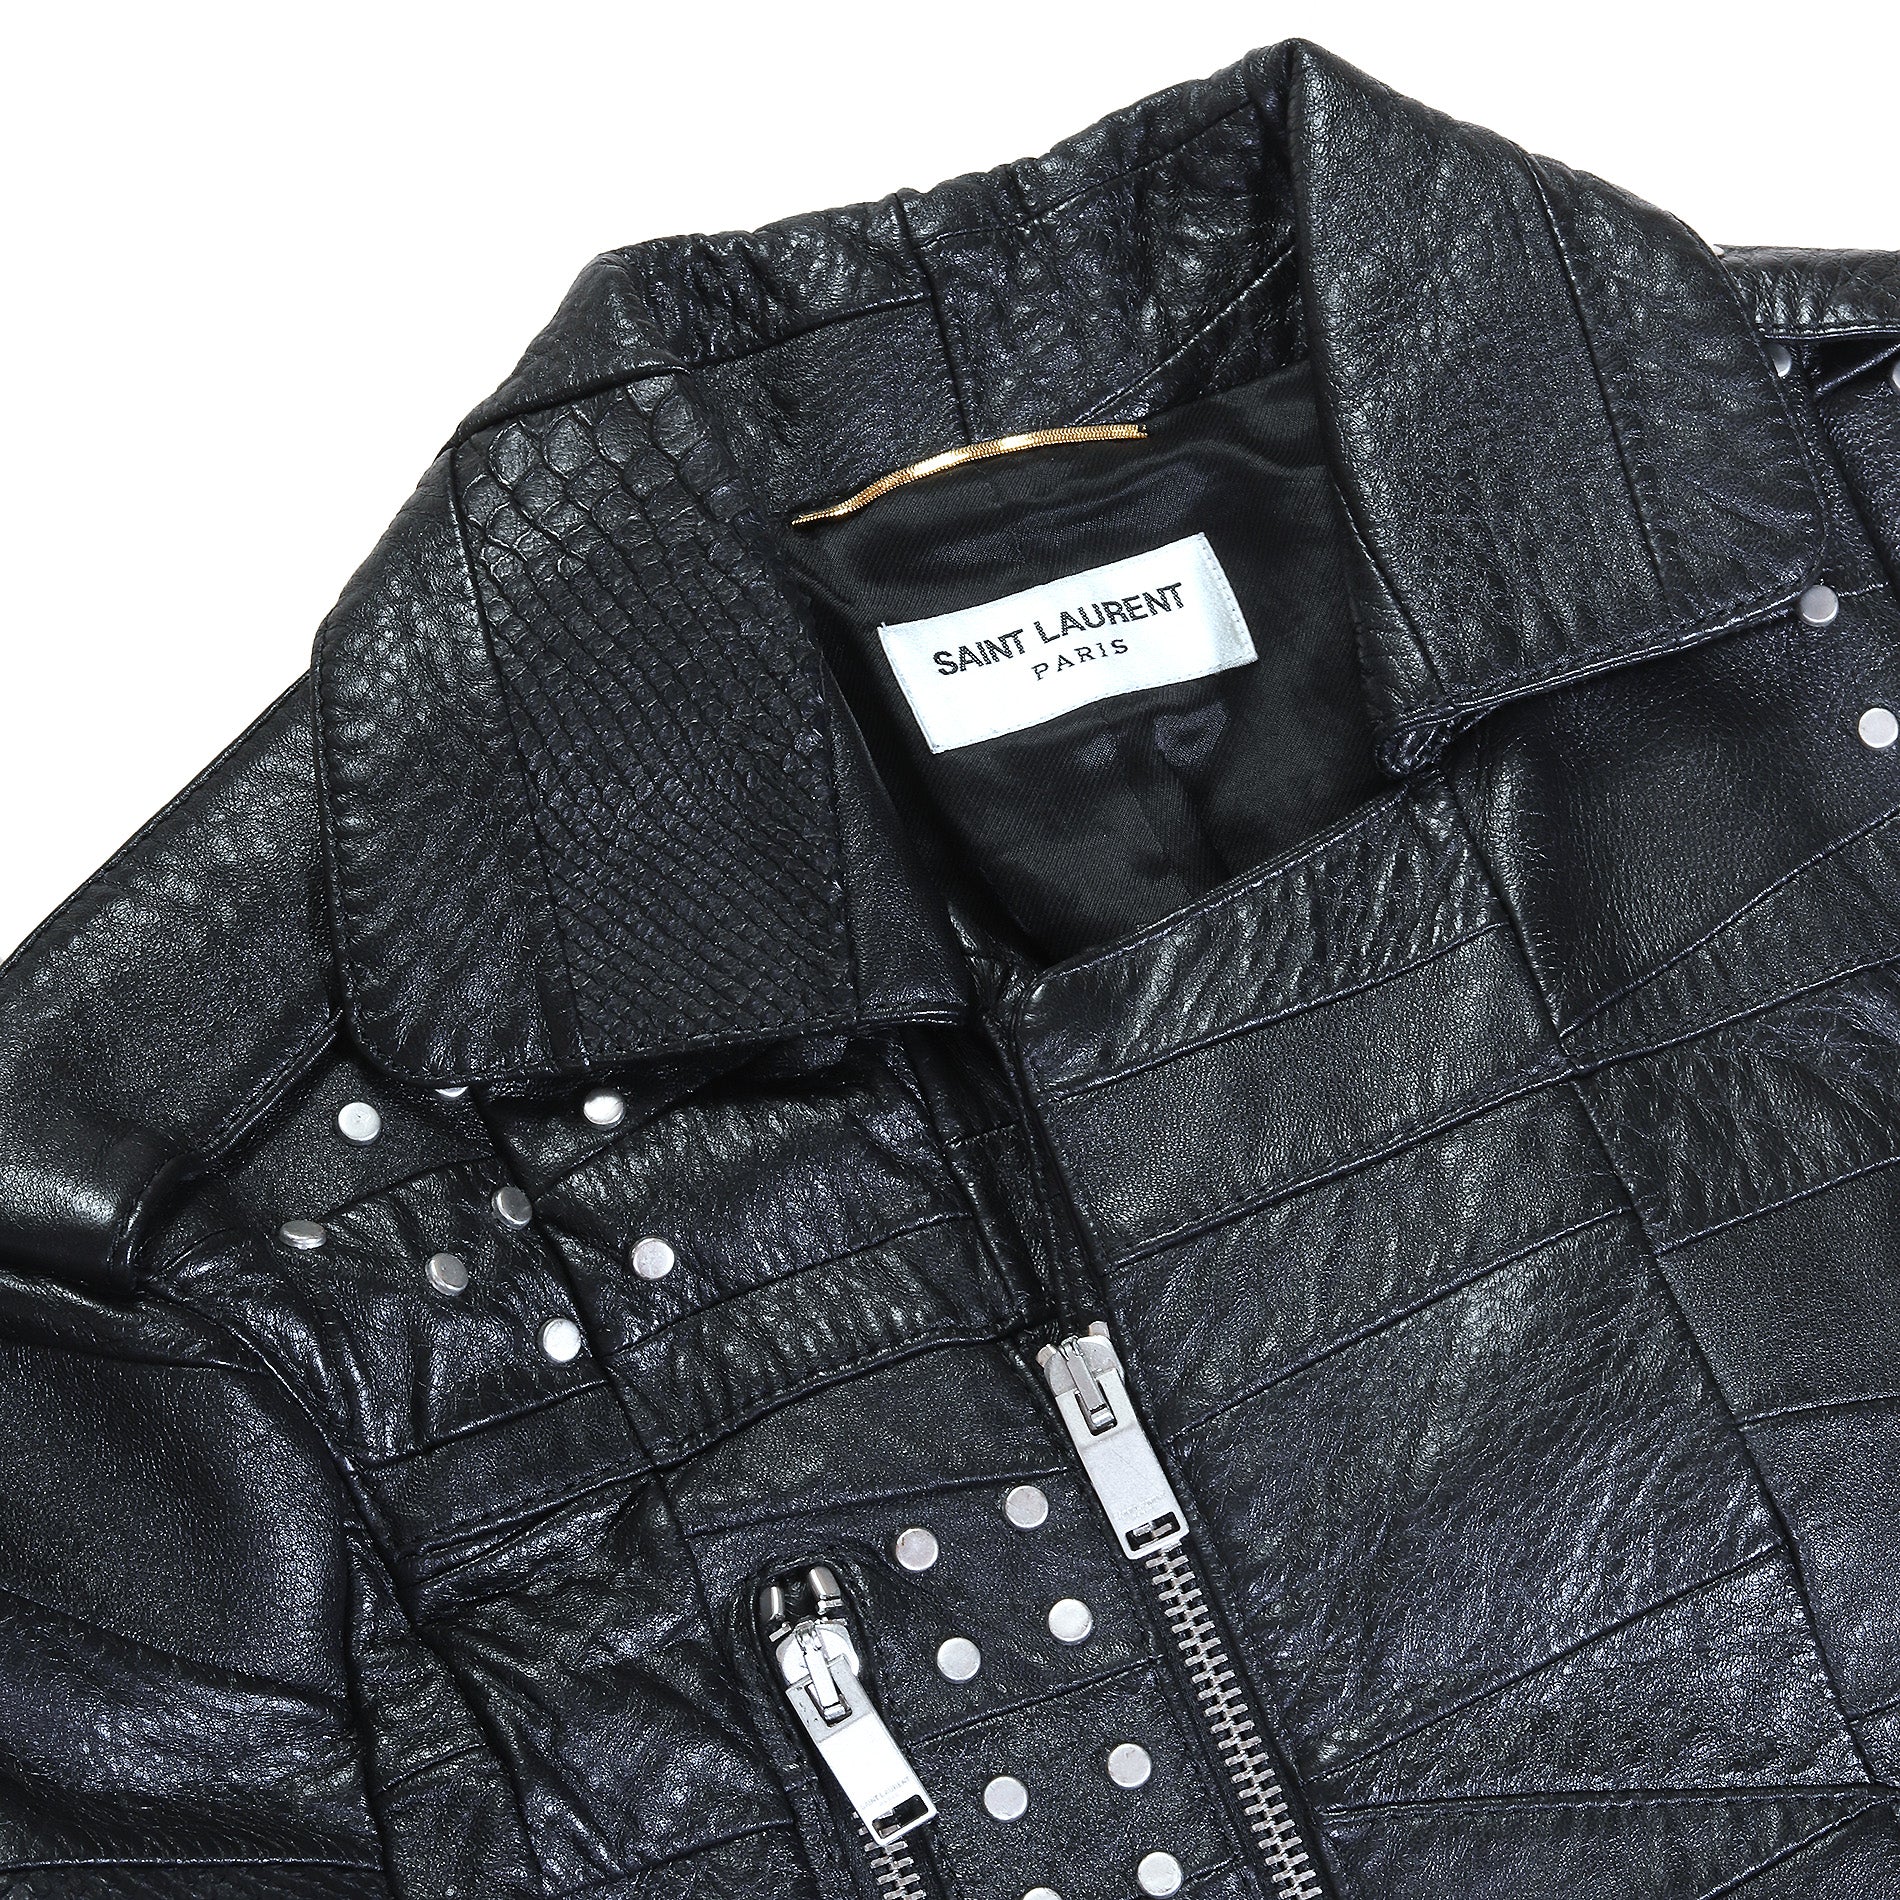 Saint Laurent SS16 Multi Patch Leather Jacket